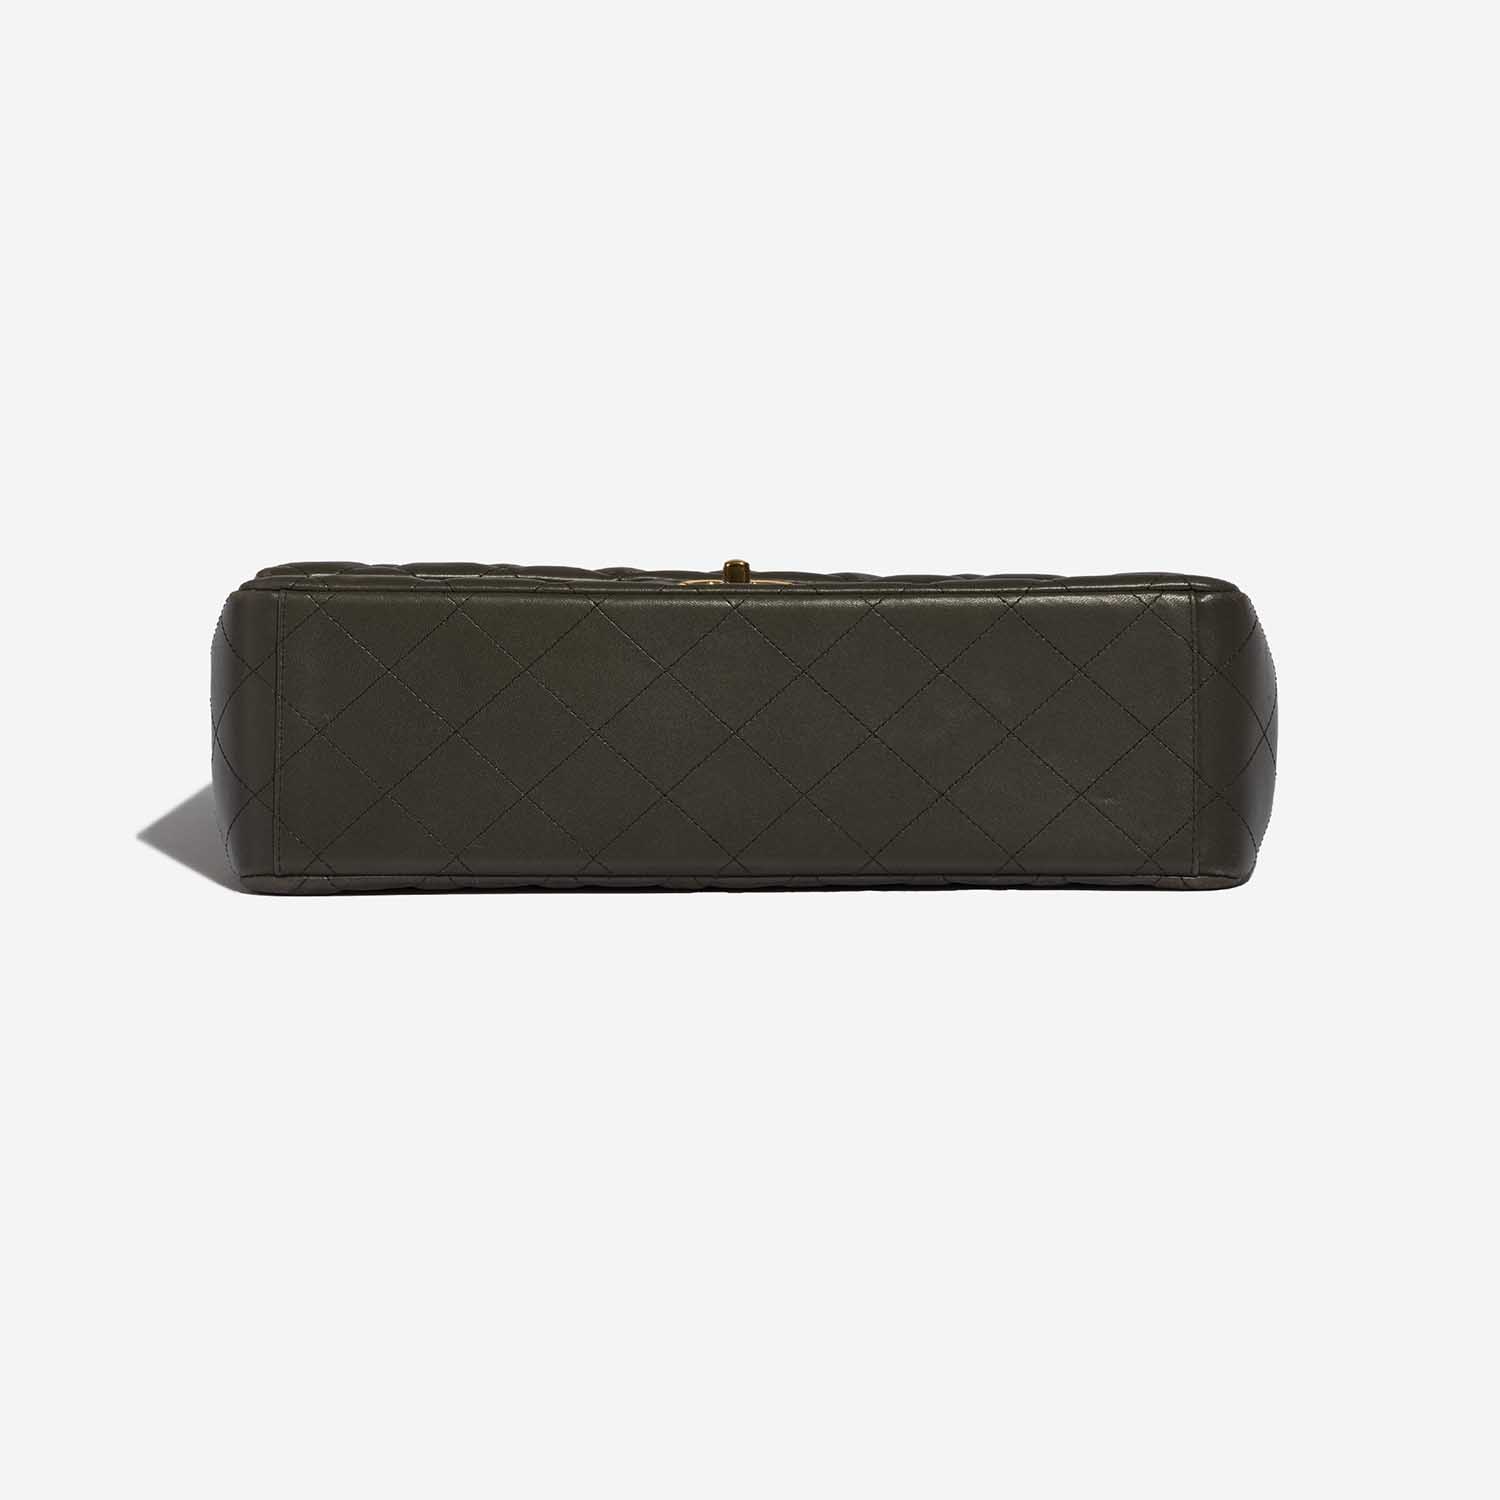 Gebrauchte Chanel Tasche Timeless Maxi Lammleder Khaki Green Bottom | Verkaufen Sie Ihre Designer-Tasche auf Saclab.com